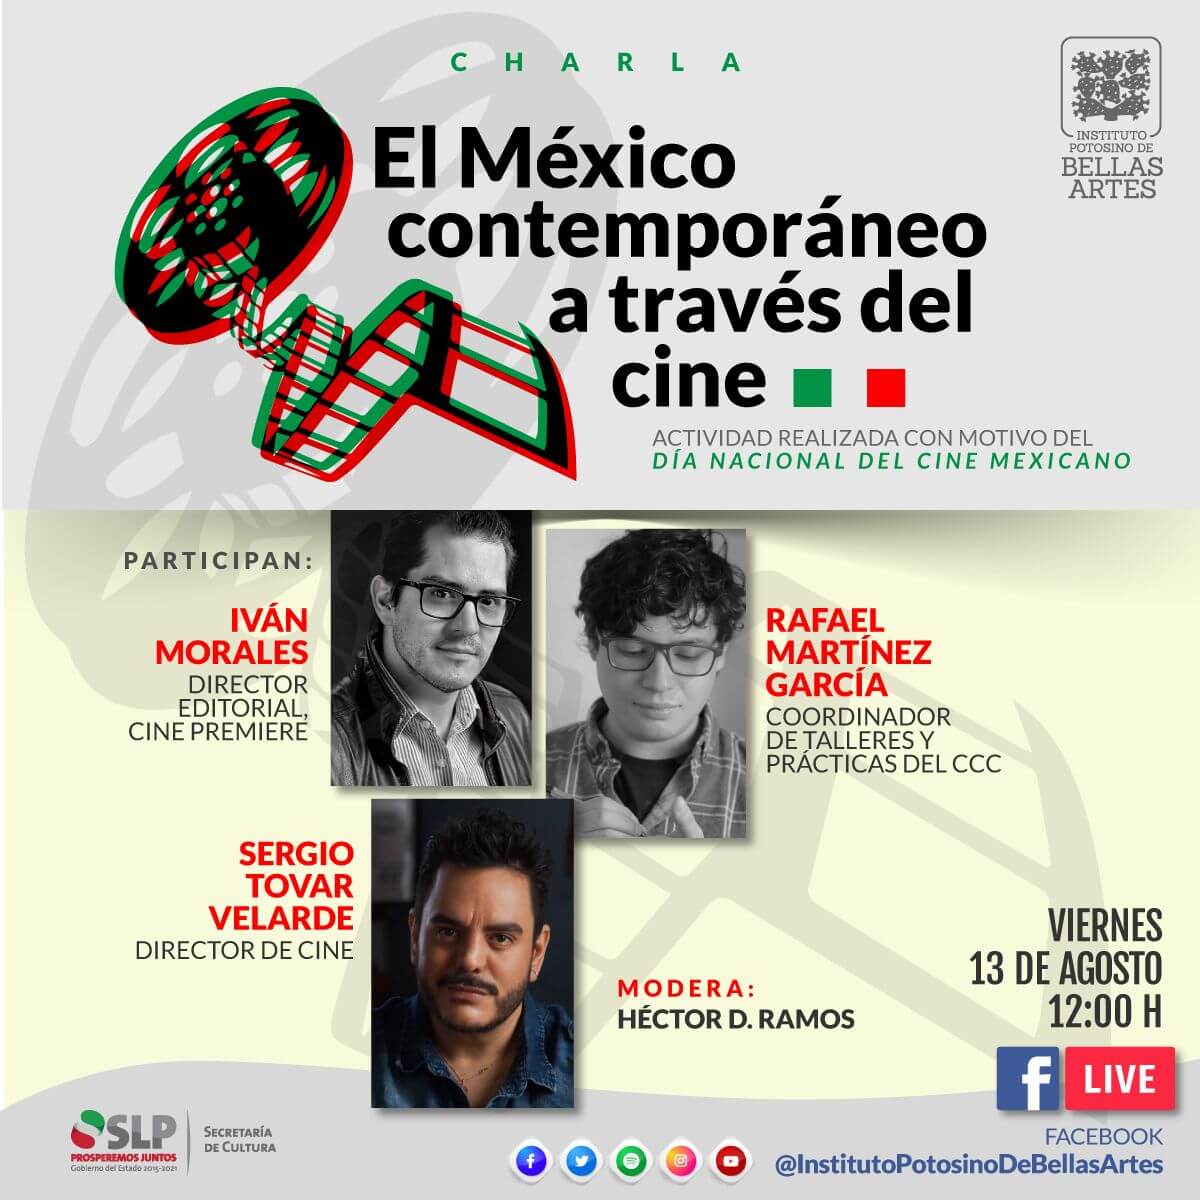 Reconocidos cineastas presentarán charla virtual vía Facebook Live para el Instituto Potosino de Bellas Artes, además, el recinto contará con contenidos especiales en torno a la fecha.